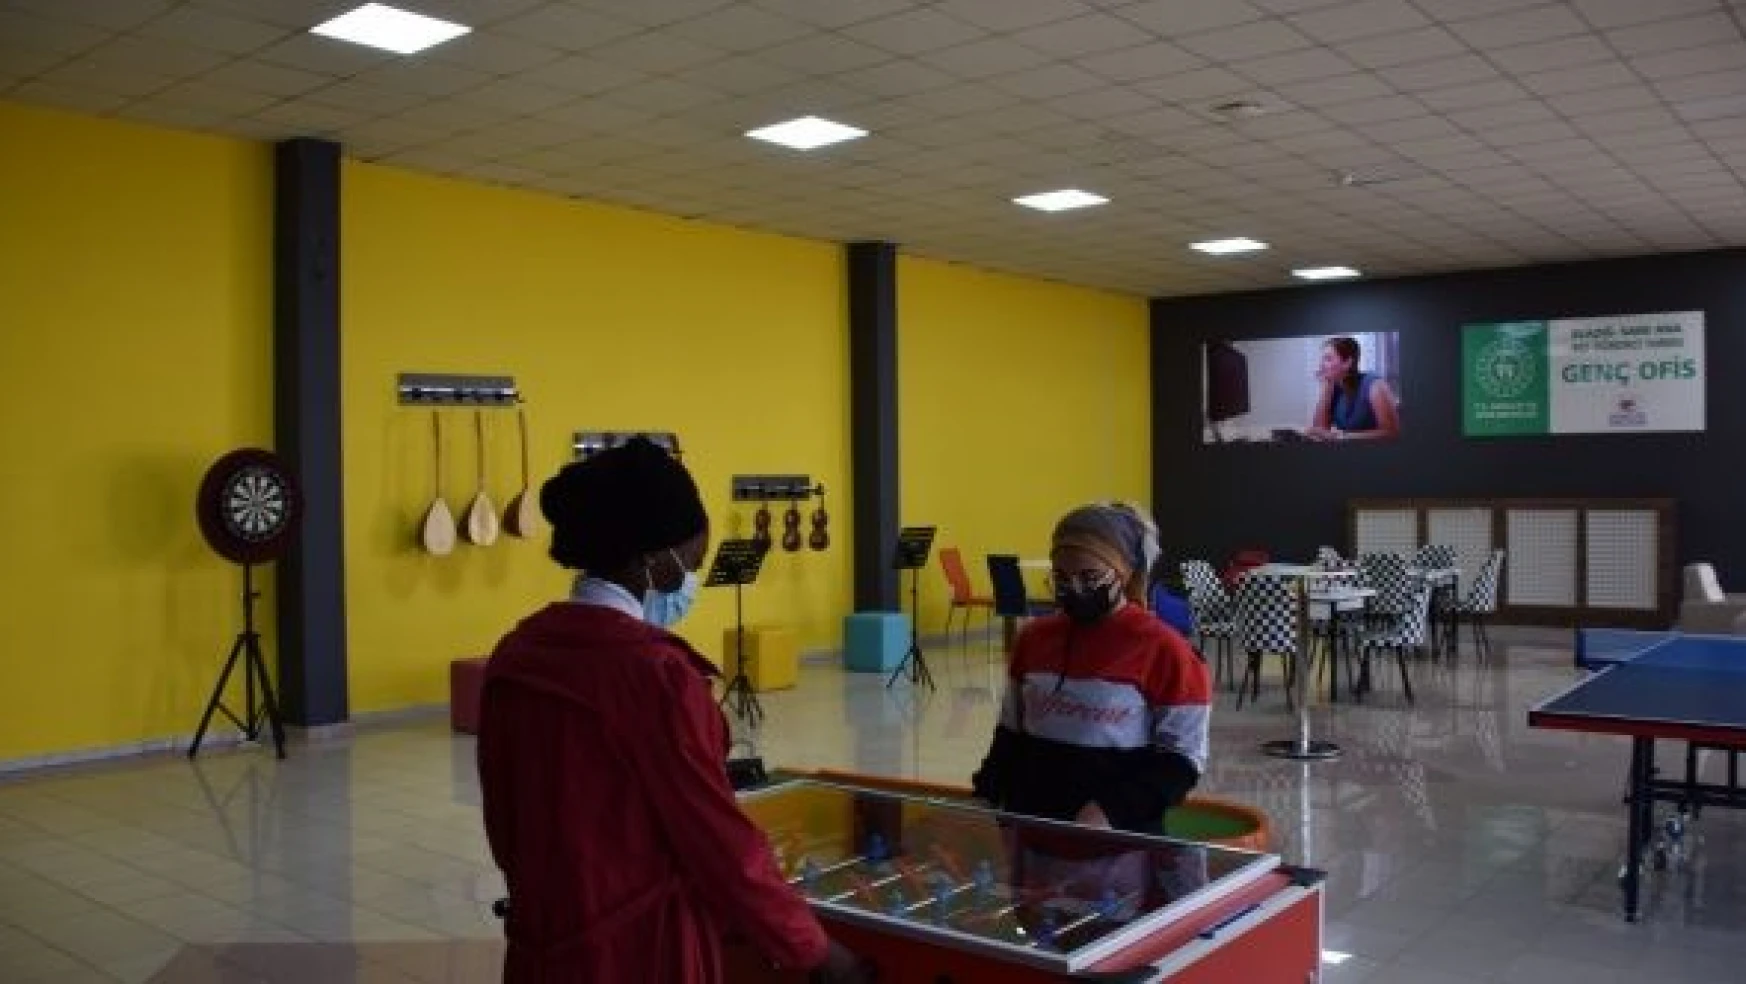 Elazığ'da genç ofisleri açıldı